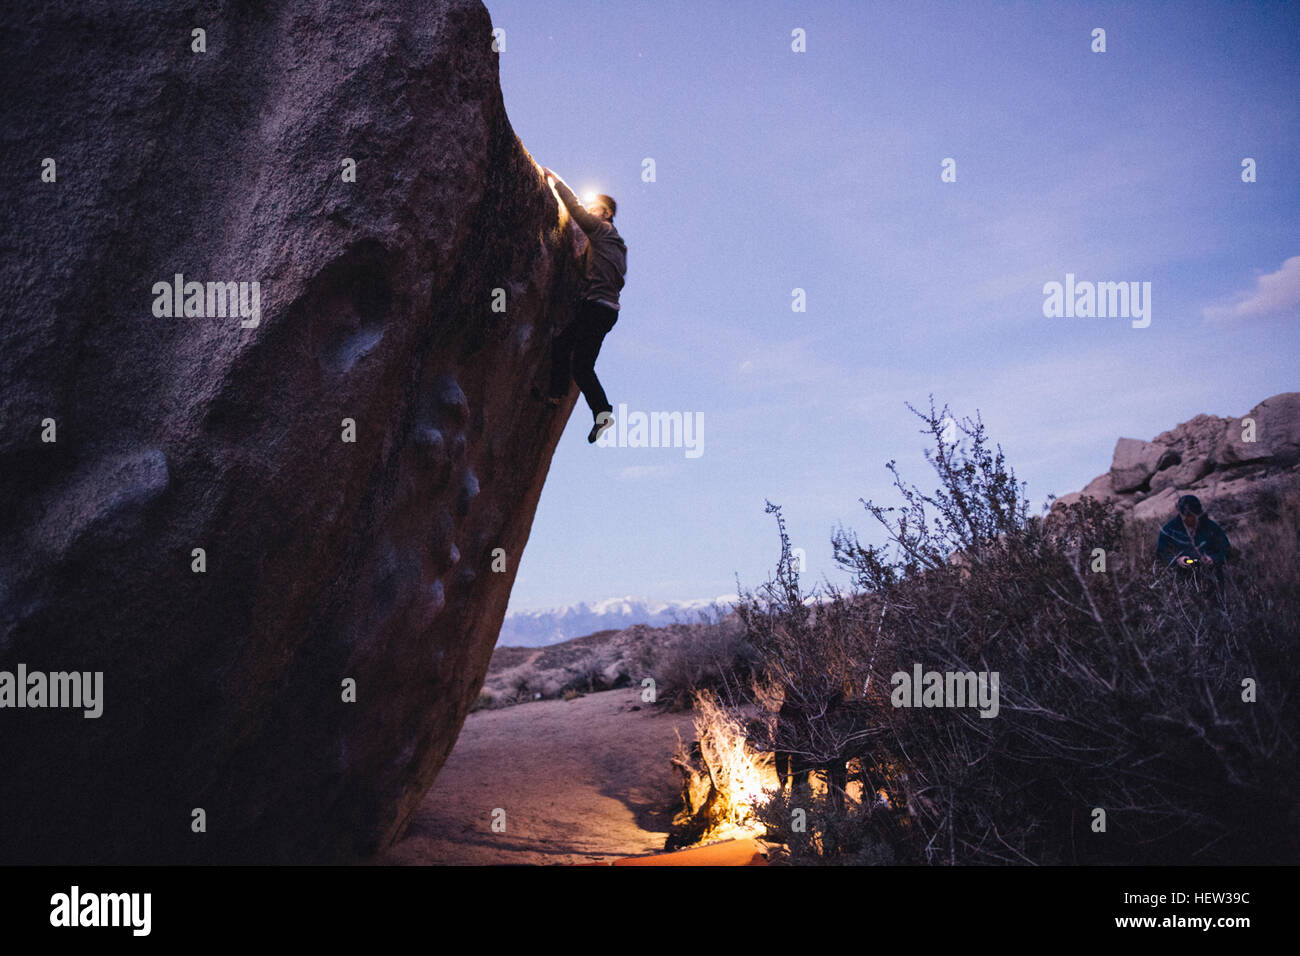 Freunde-Klettern in der Nacht, Buttermilch Felsbrocken, Bischof, Kalifornien, USA Stockfoto